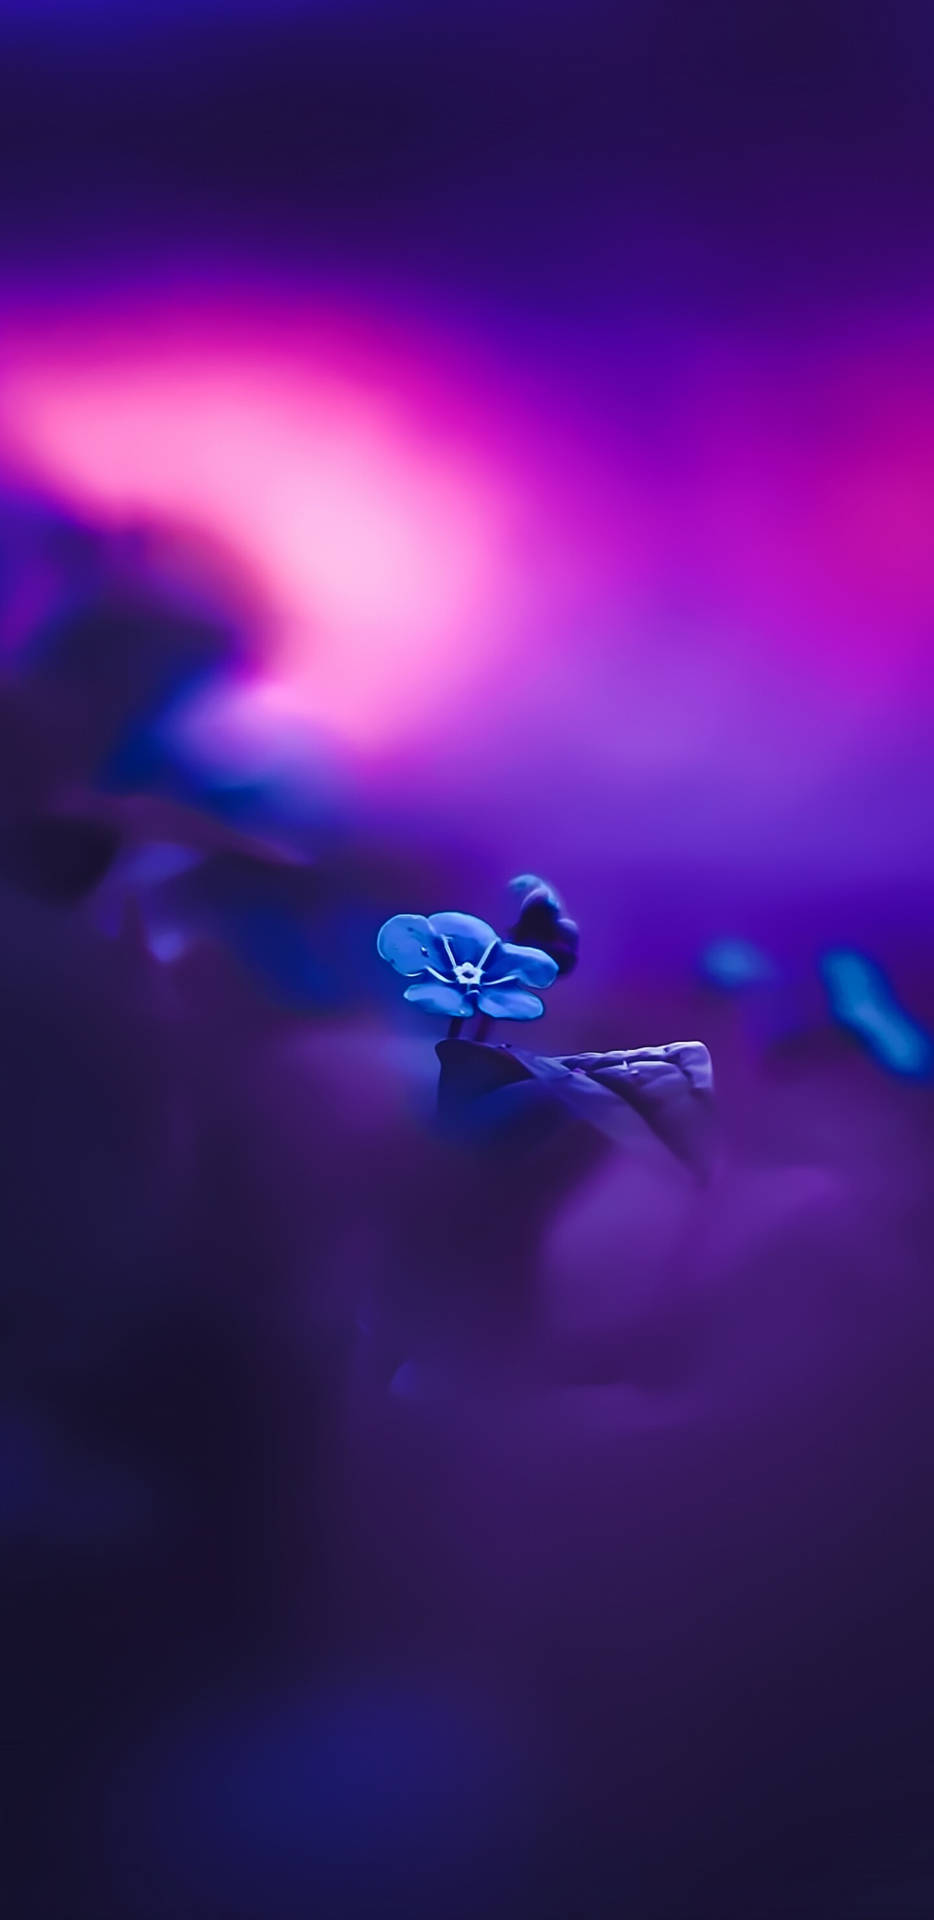 Pixel 3 Xl Blue Flower Focus Shot